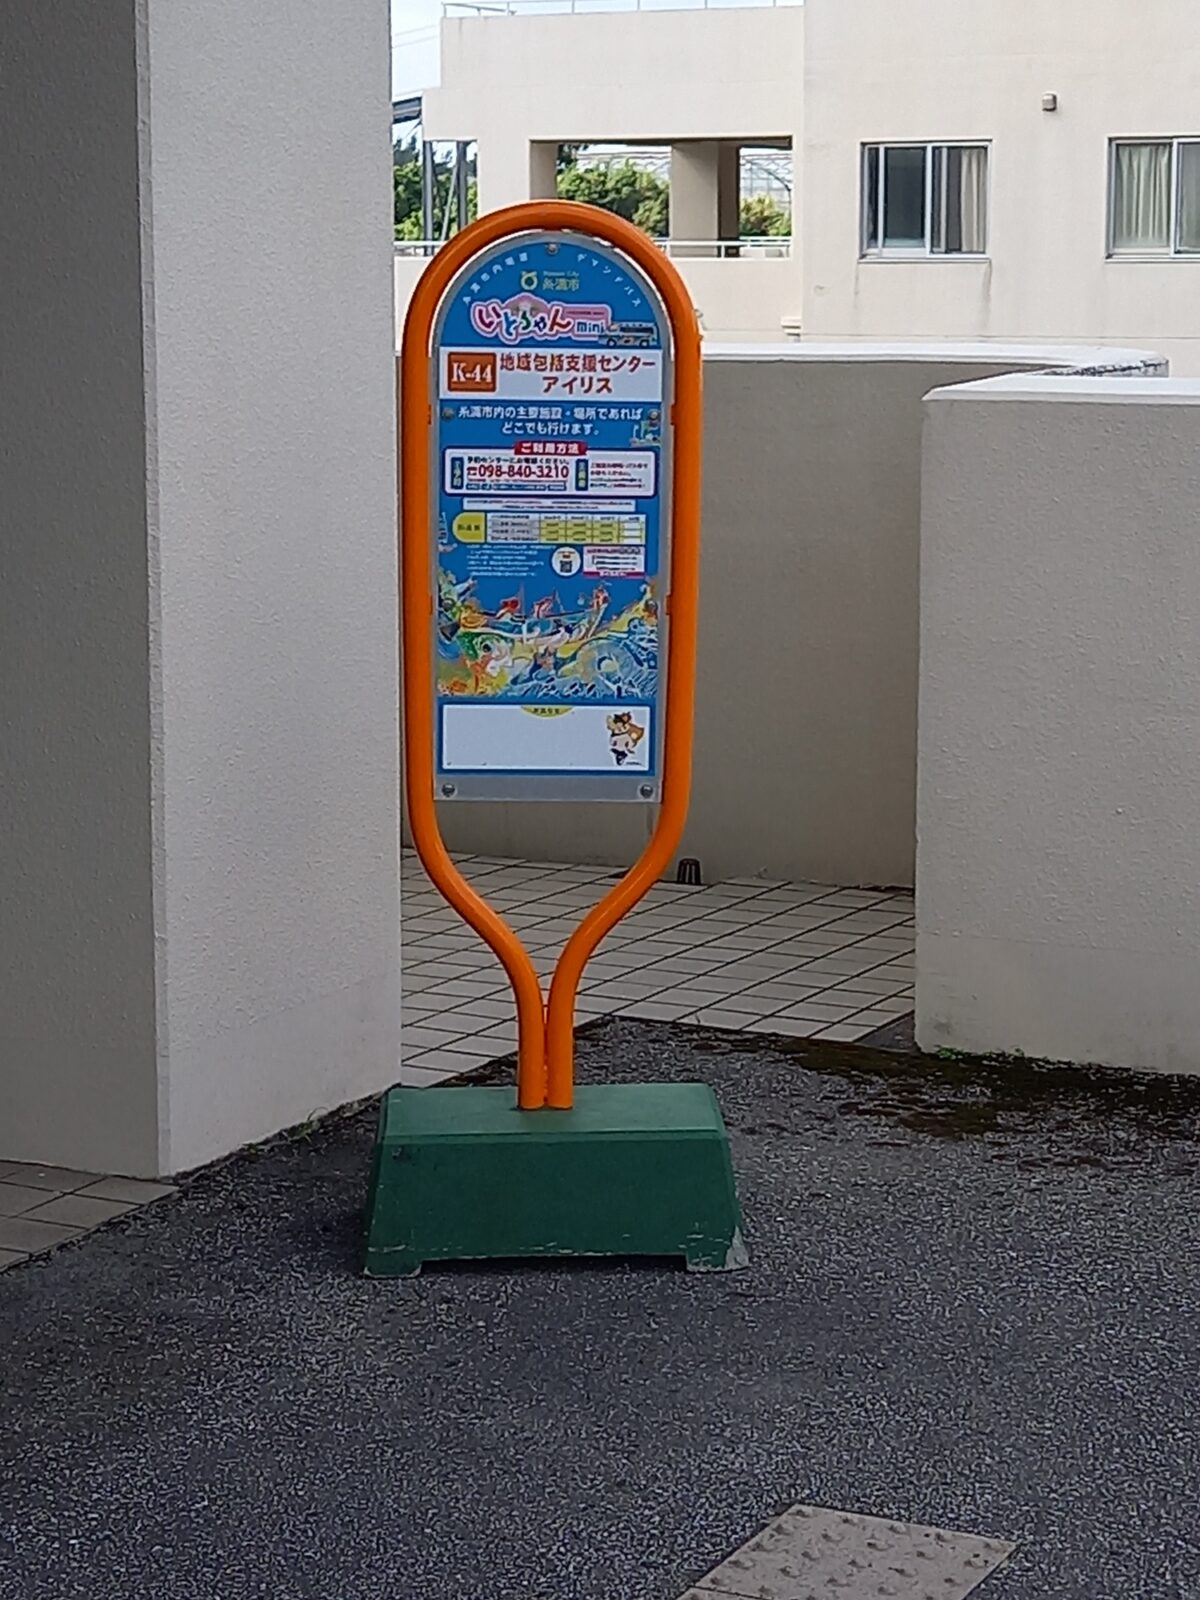 ソフィアブログ「「いとちゃんmini」のバス停を設置」を掲載しました。